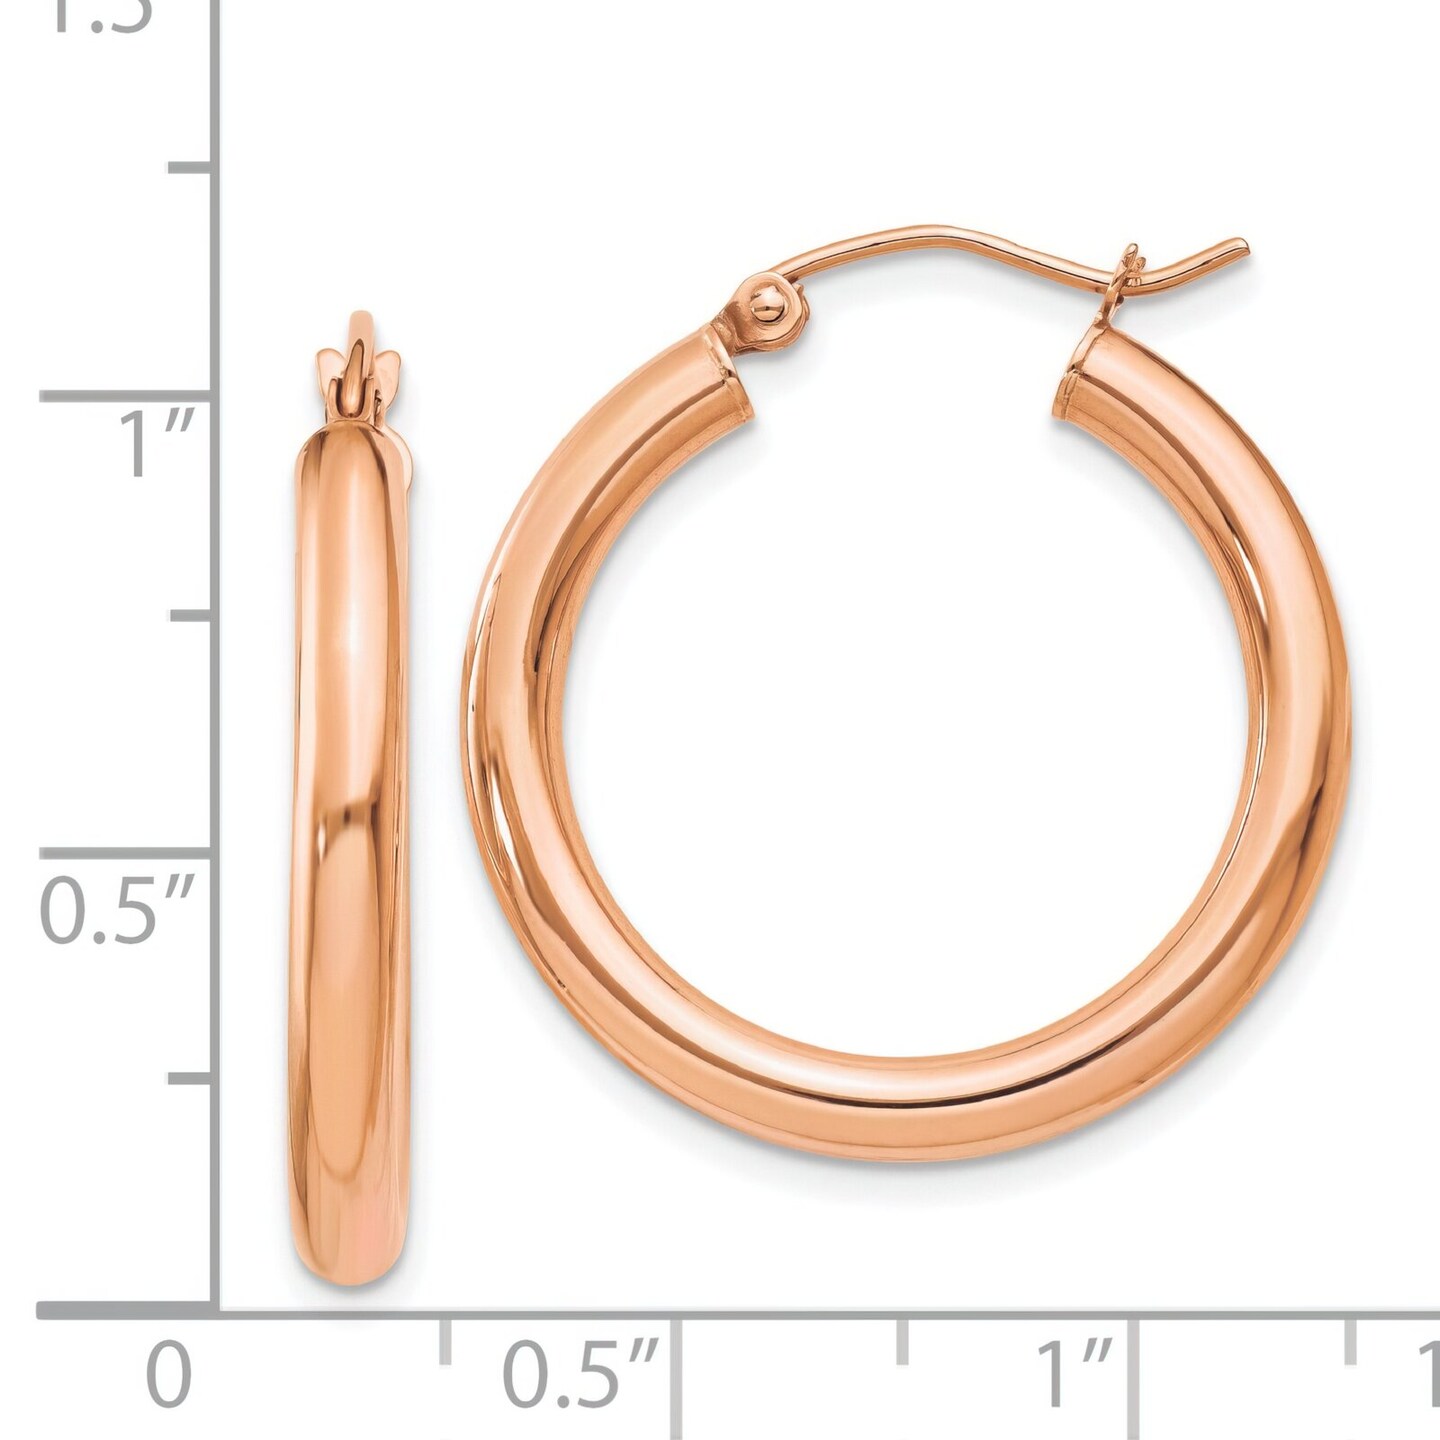 14K Rose Gold Hoop Earrings Polished Ear Jewelry 28mm x 25.4mm